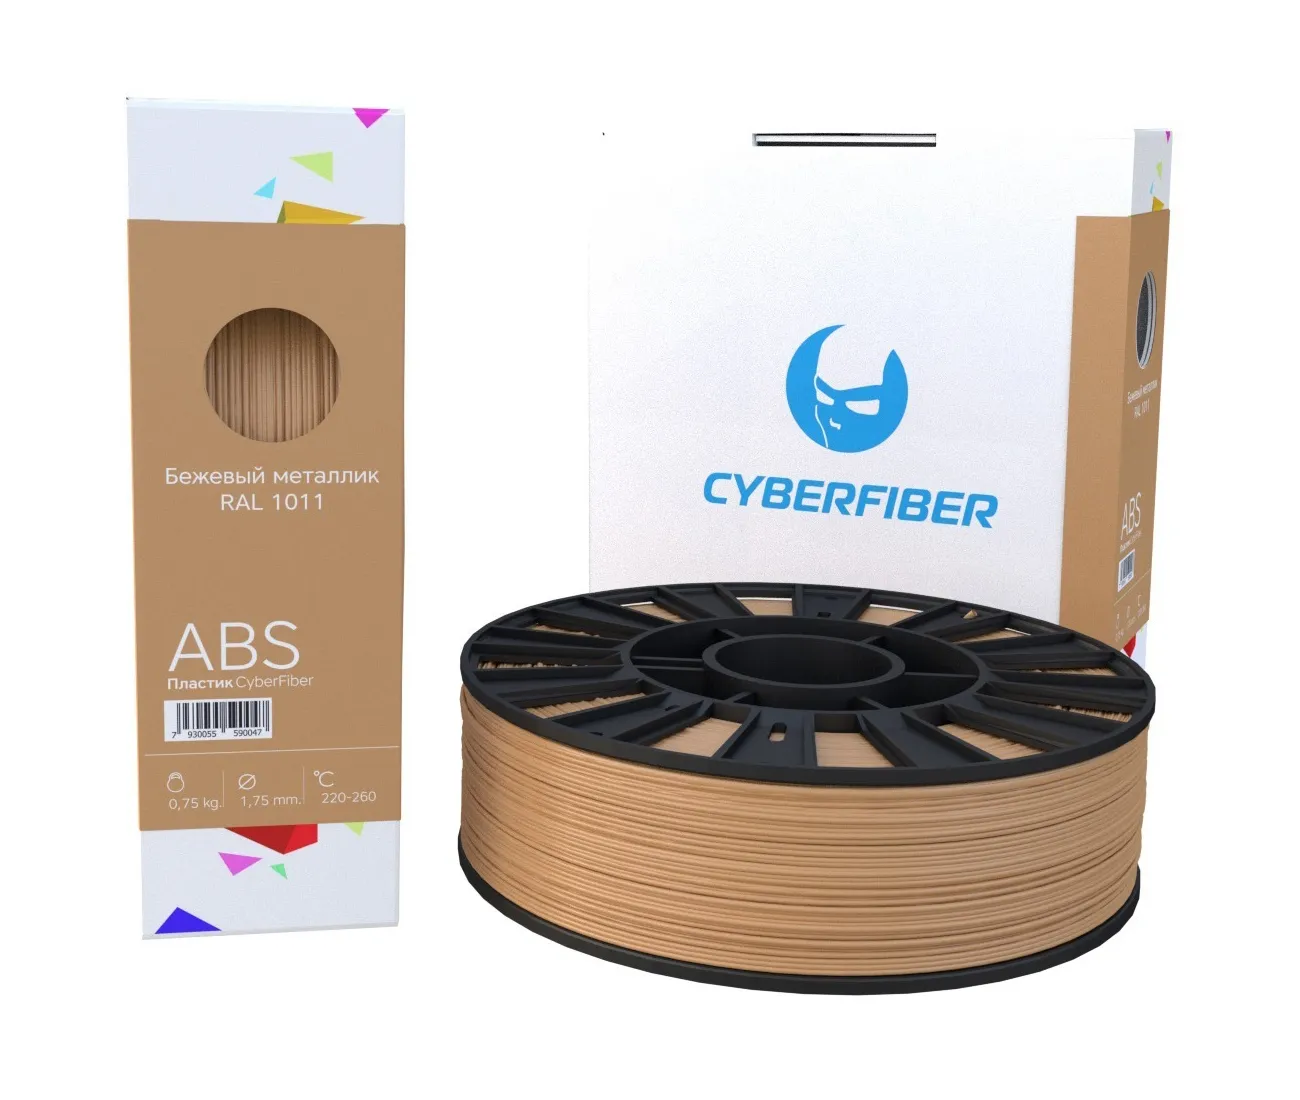 Фото ABS пластик CyberFiber 1,75, бежевый металлик, 750 г 1